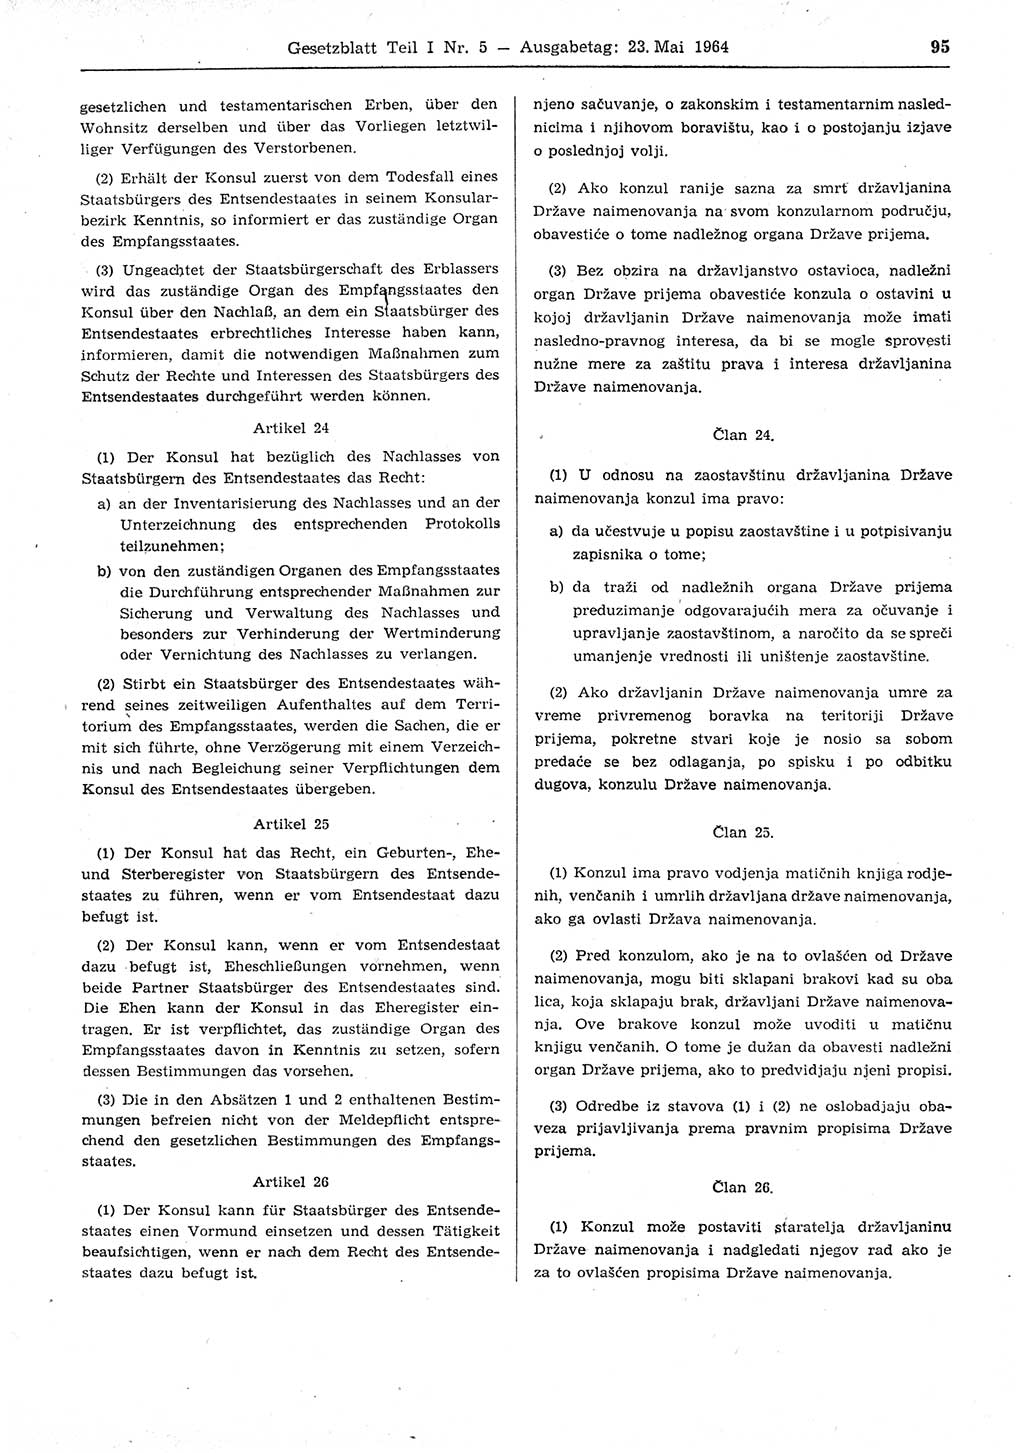 Gesetzblatt (GBl.) der Deutschen Demokratischen Republik (DDR) Teil Ⅰ 1964, Seite 95 (GBl. DDR Ⅰ 1964, S. 95)